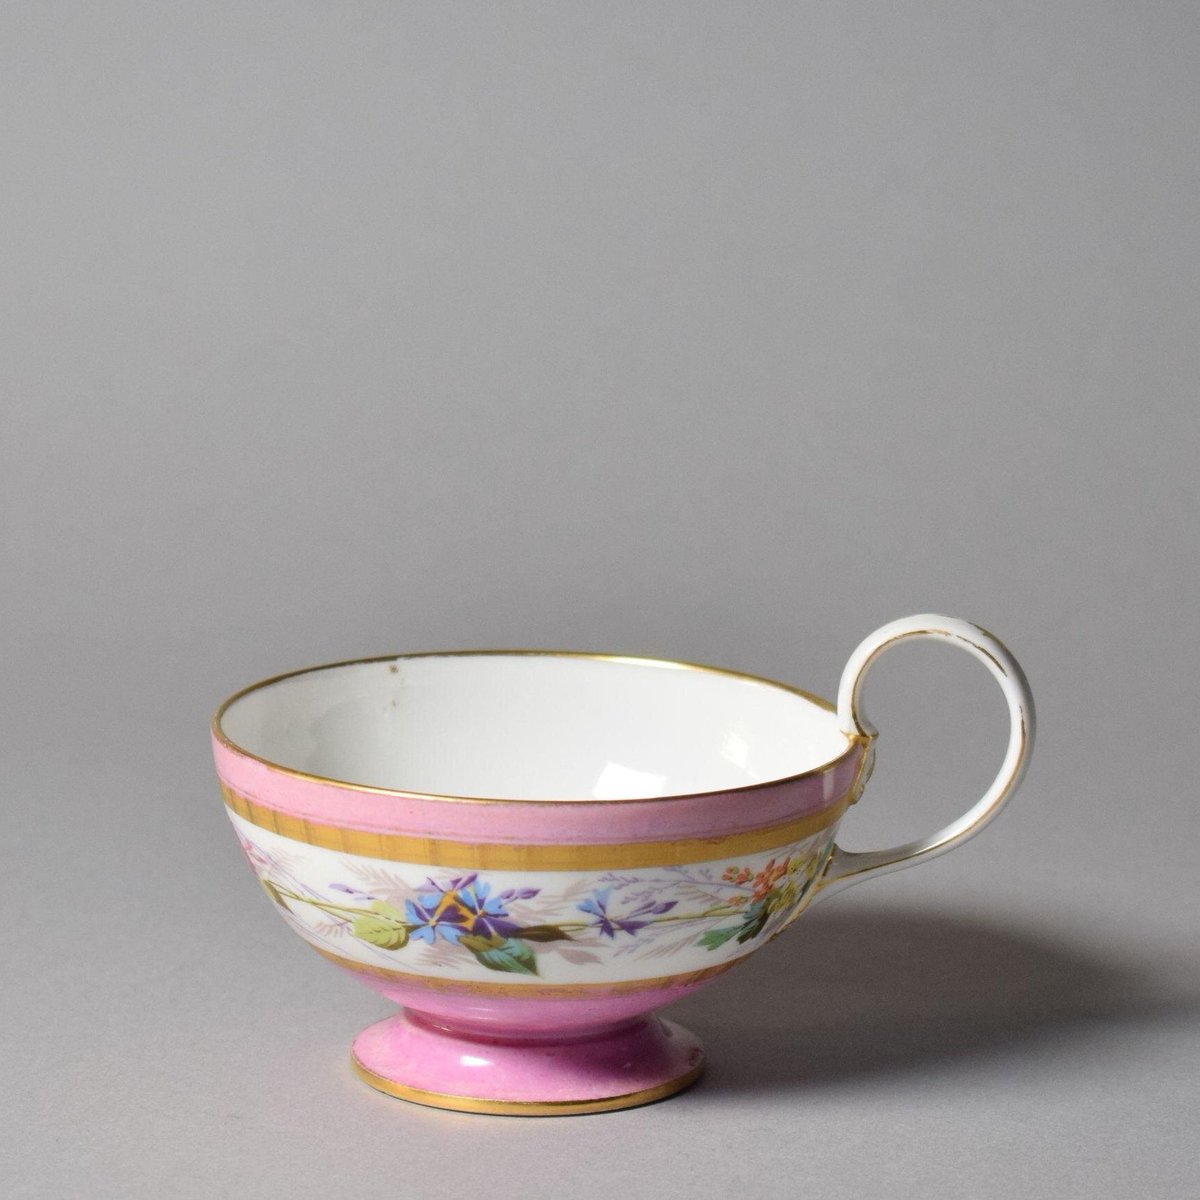 Tea cup, 1874. Victoria & Albert Museum.